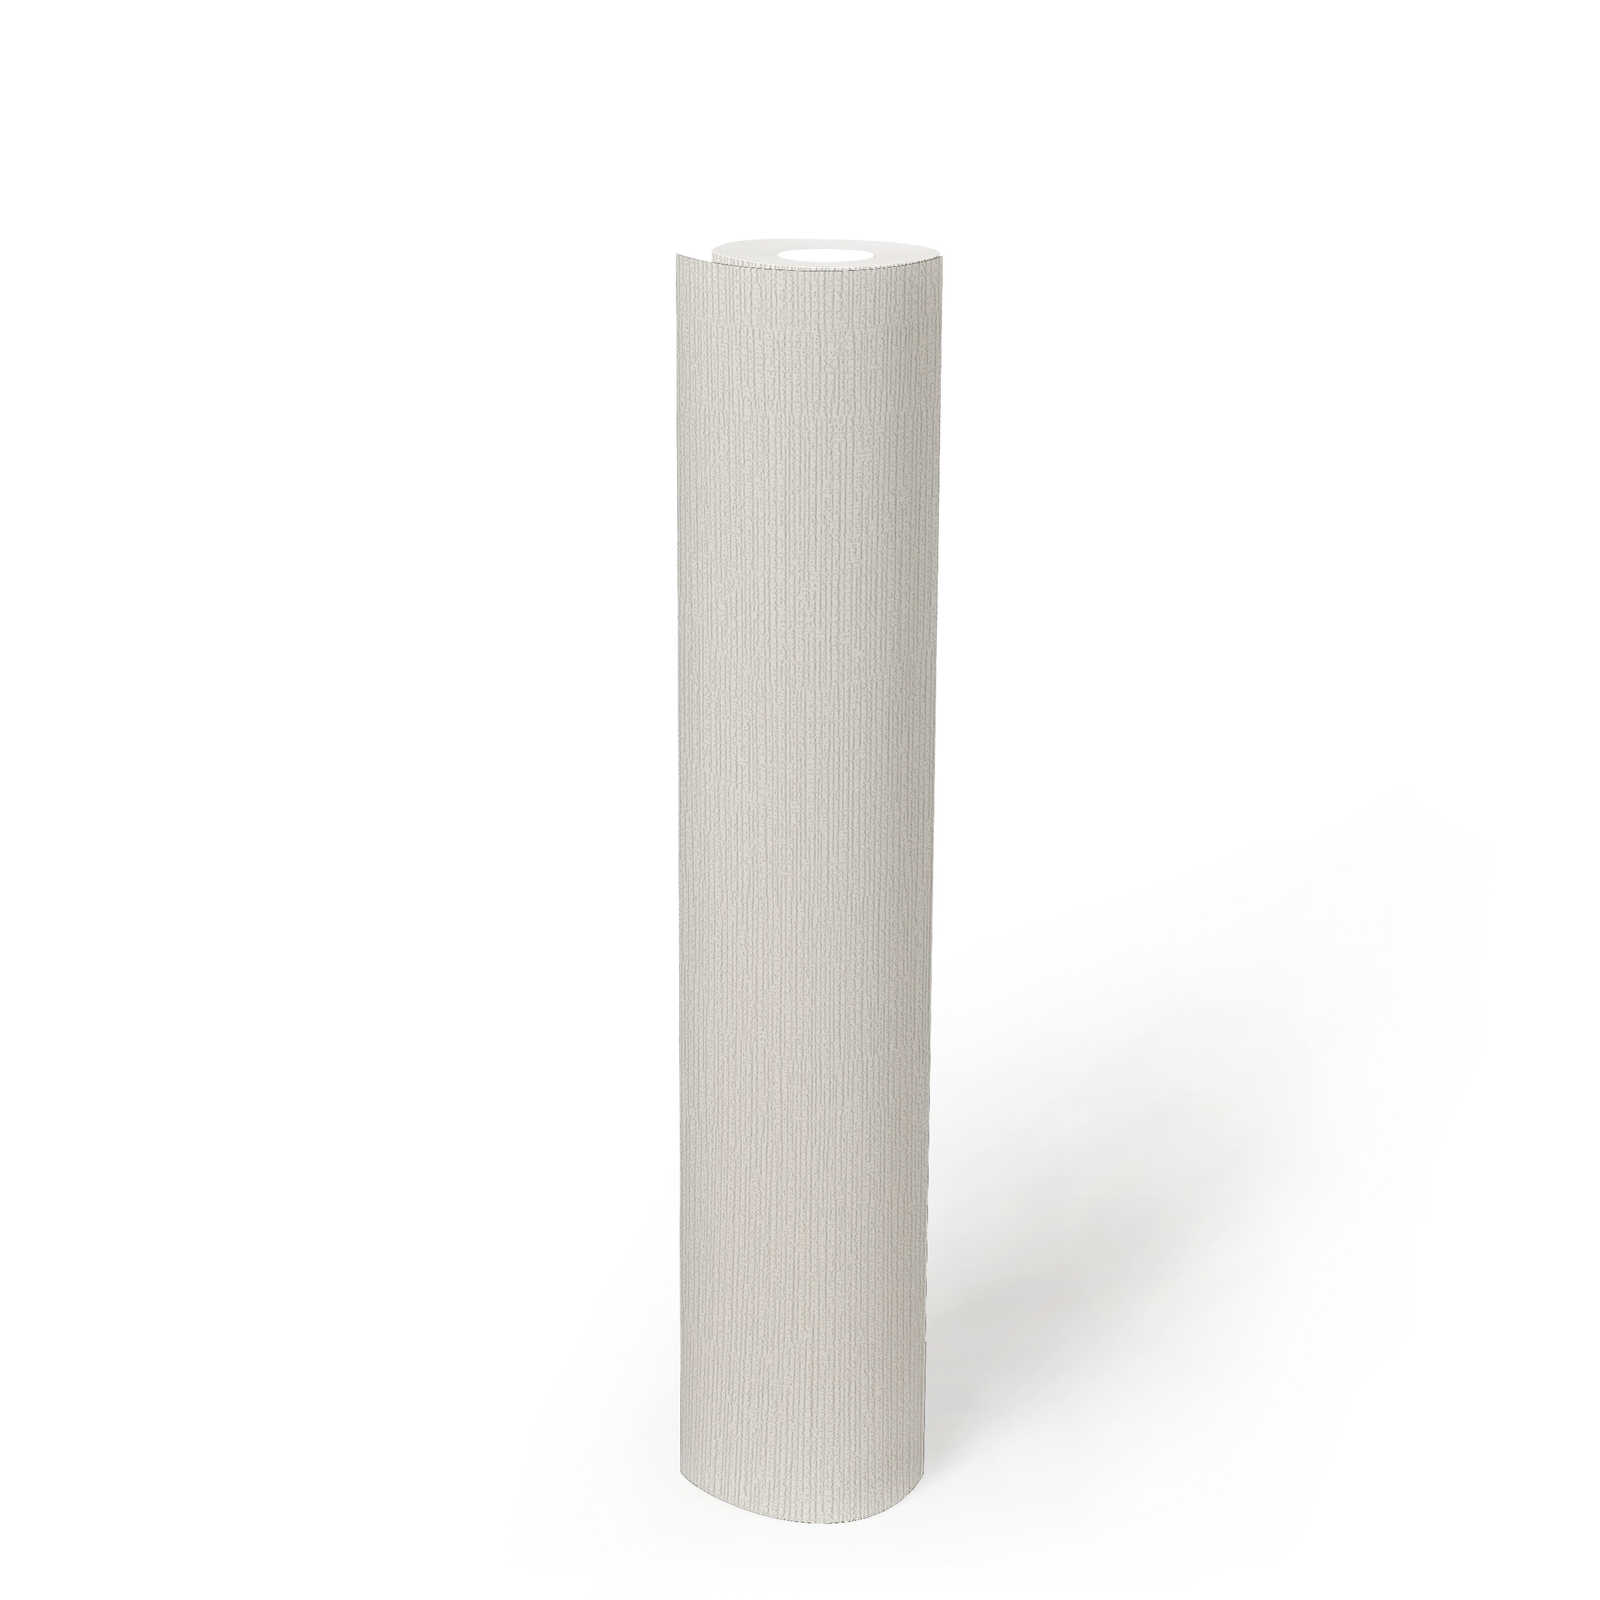             Papier peint intissé blanc avec structure rétro & effet textile
        